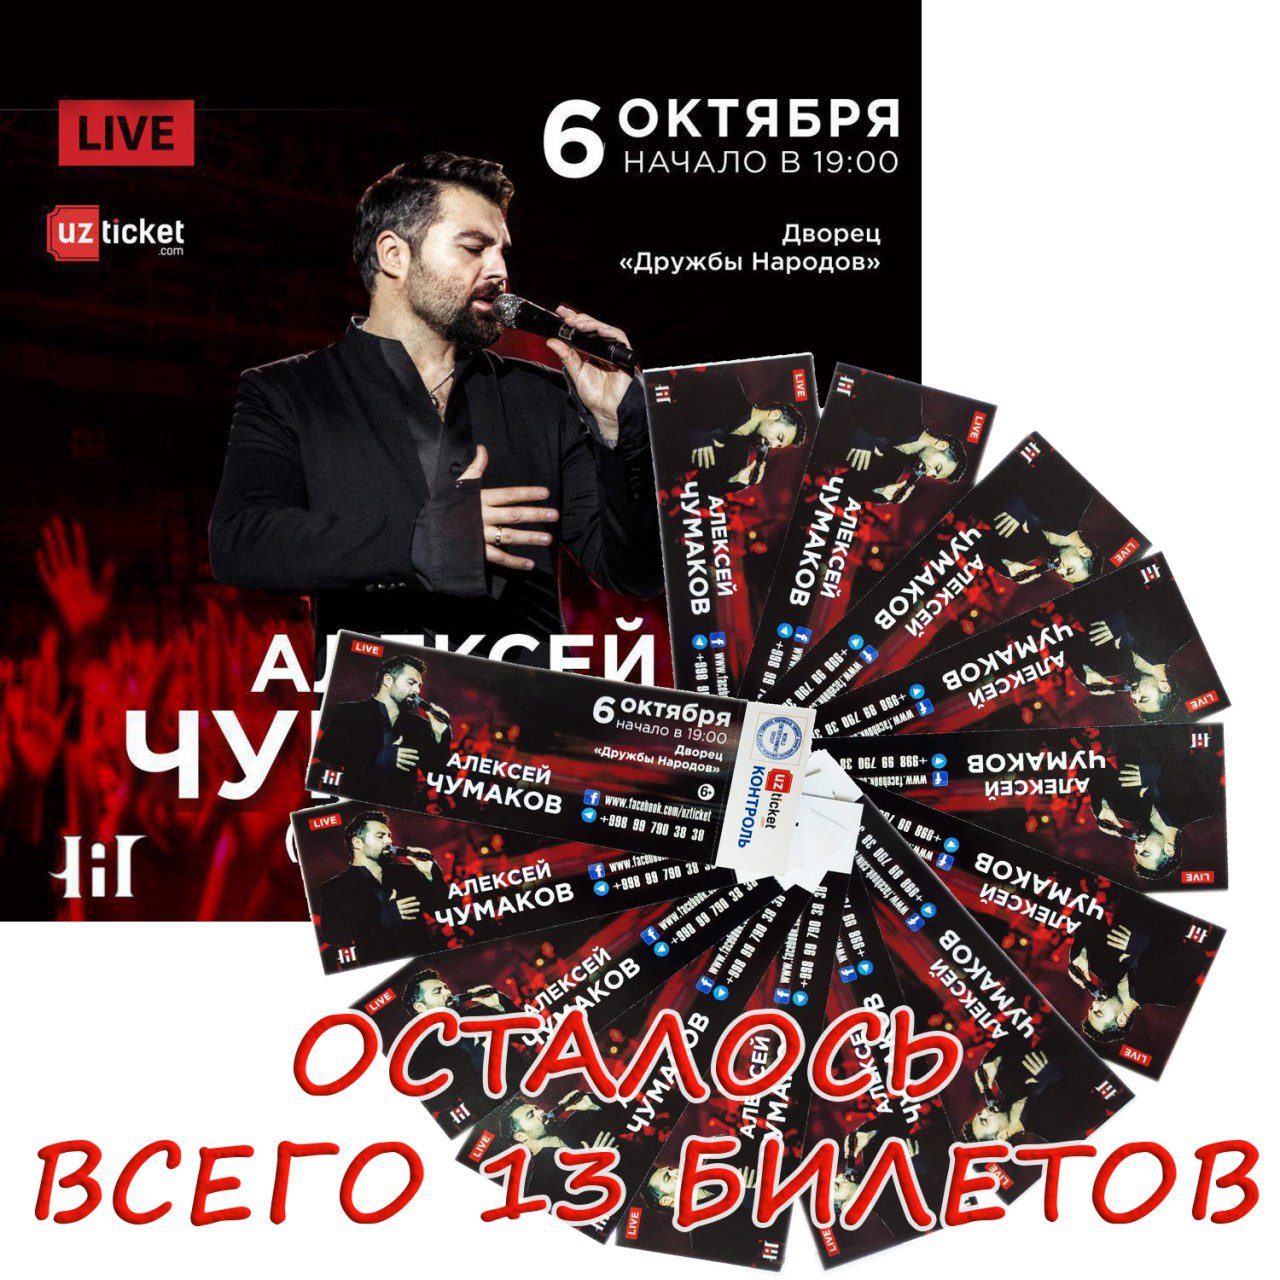 Шоу концерты купить билет в москве. Билет на концерт Алексея Чумакова. Картинка афиша концерт Чумаков. Название концерта в марте.